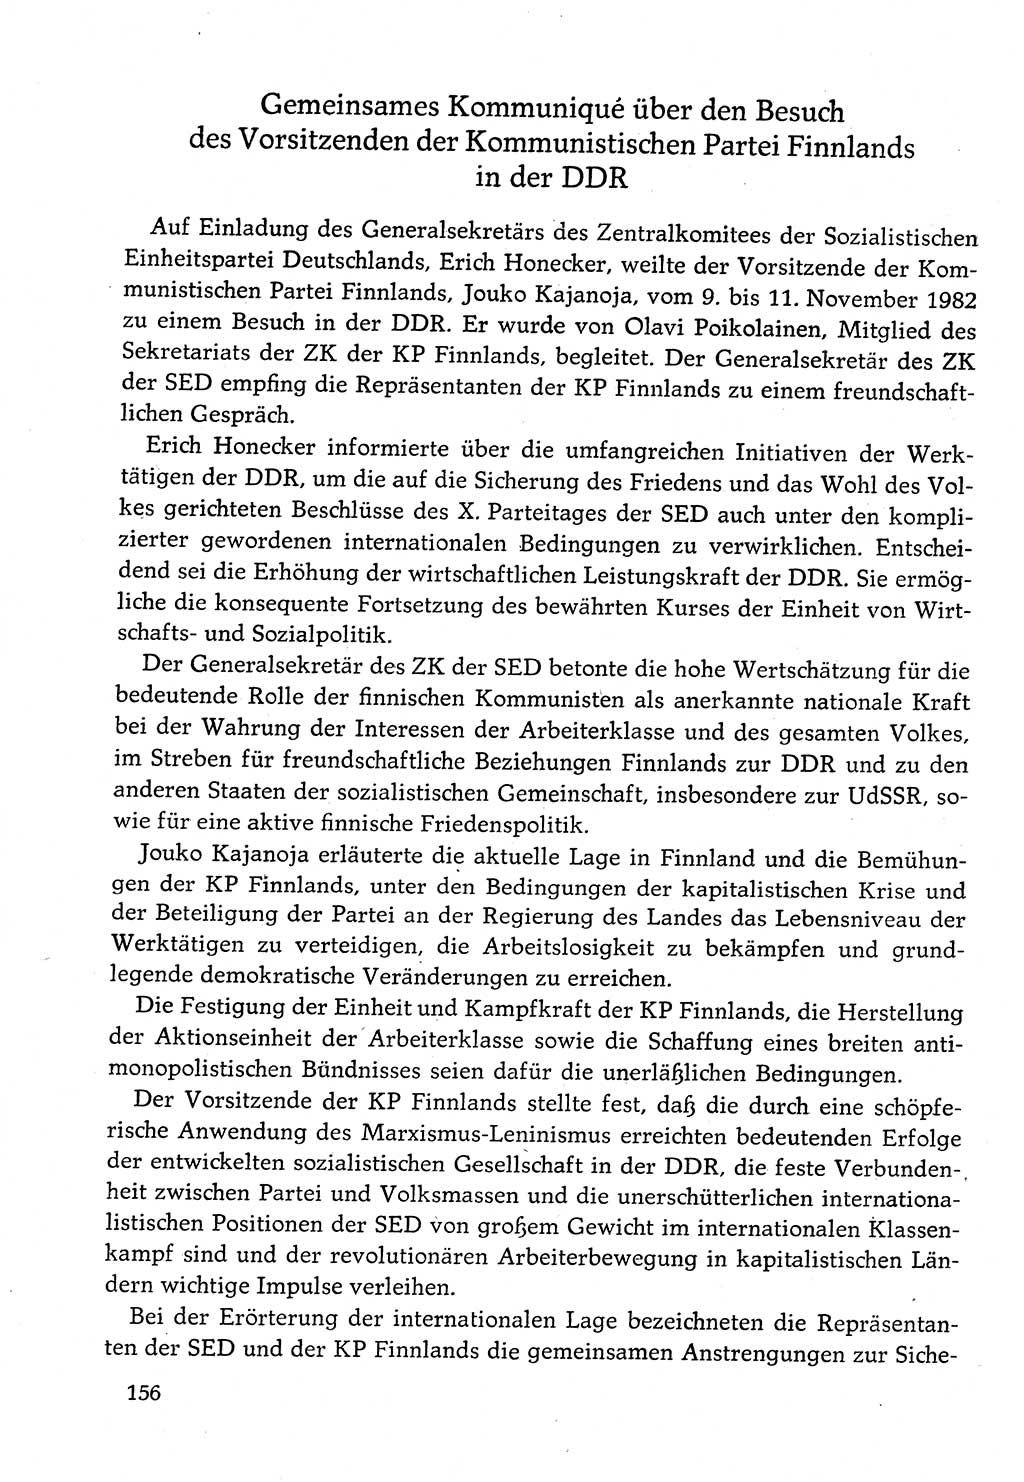 Dokumente der Sozialistischen Einheitspartei Deutschlands (SED) [Deutsche Demokratische Republik (DDR)] 1982-1983, Seite 156 (Dok. SED DDR 1982-1983, S. 156)